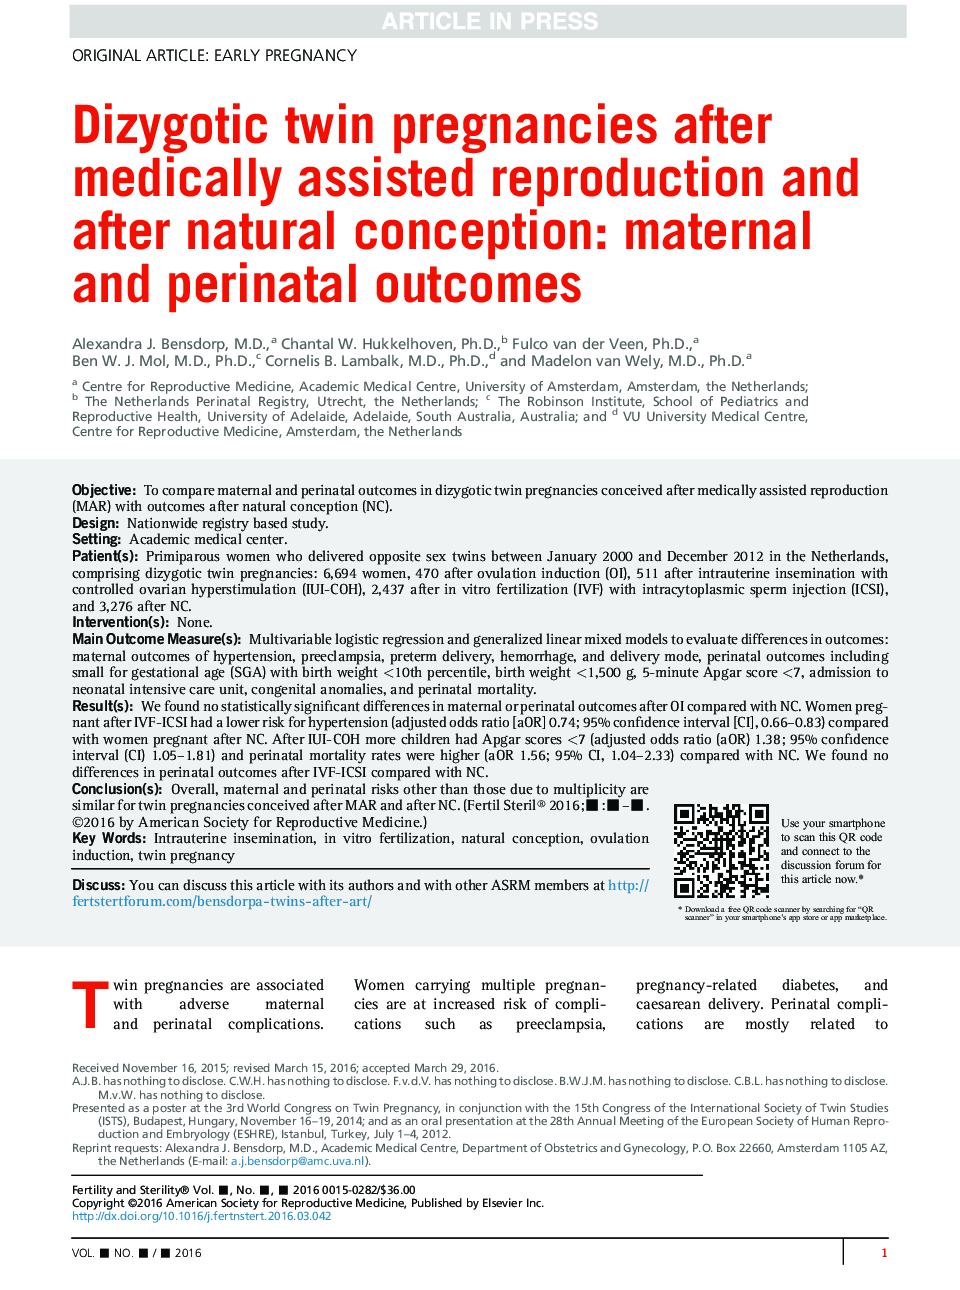 حاملگی دوقلوهای دوقلو بعد از تولید مثل پزشکی و بعد از برداشت طبیعی: نتایج مادران و پس از تولد 